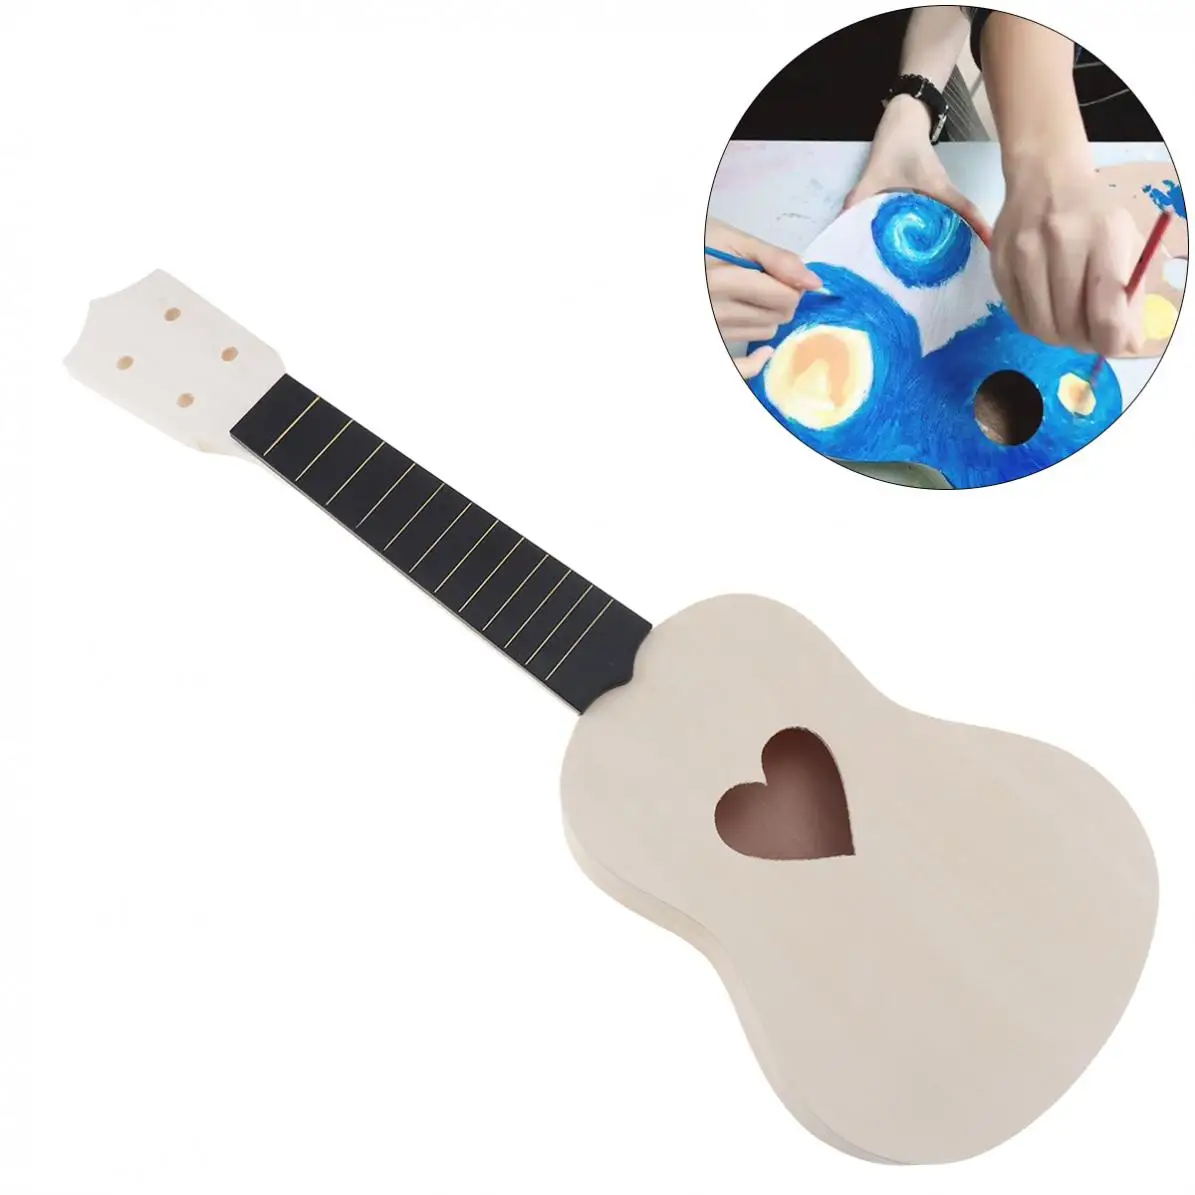 21-Дюймовая Гавайская Гитара Укулеле DIY Kit из Липы Гавайская Гитара с Отверстием в форме сердца для Ручной Росписи Идеальные Родители-детская кампания